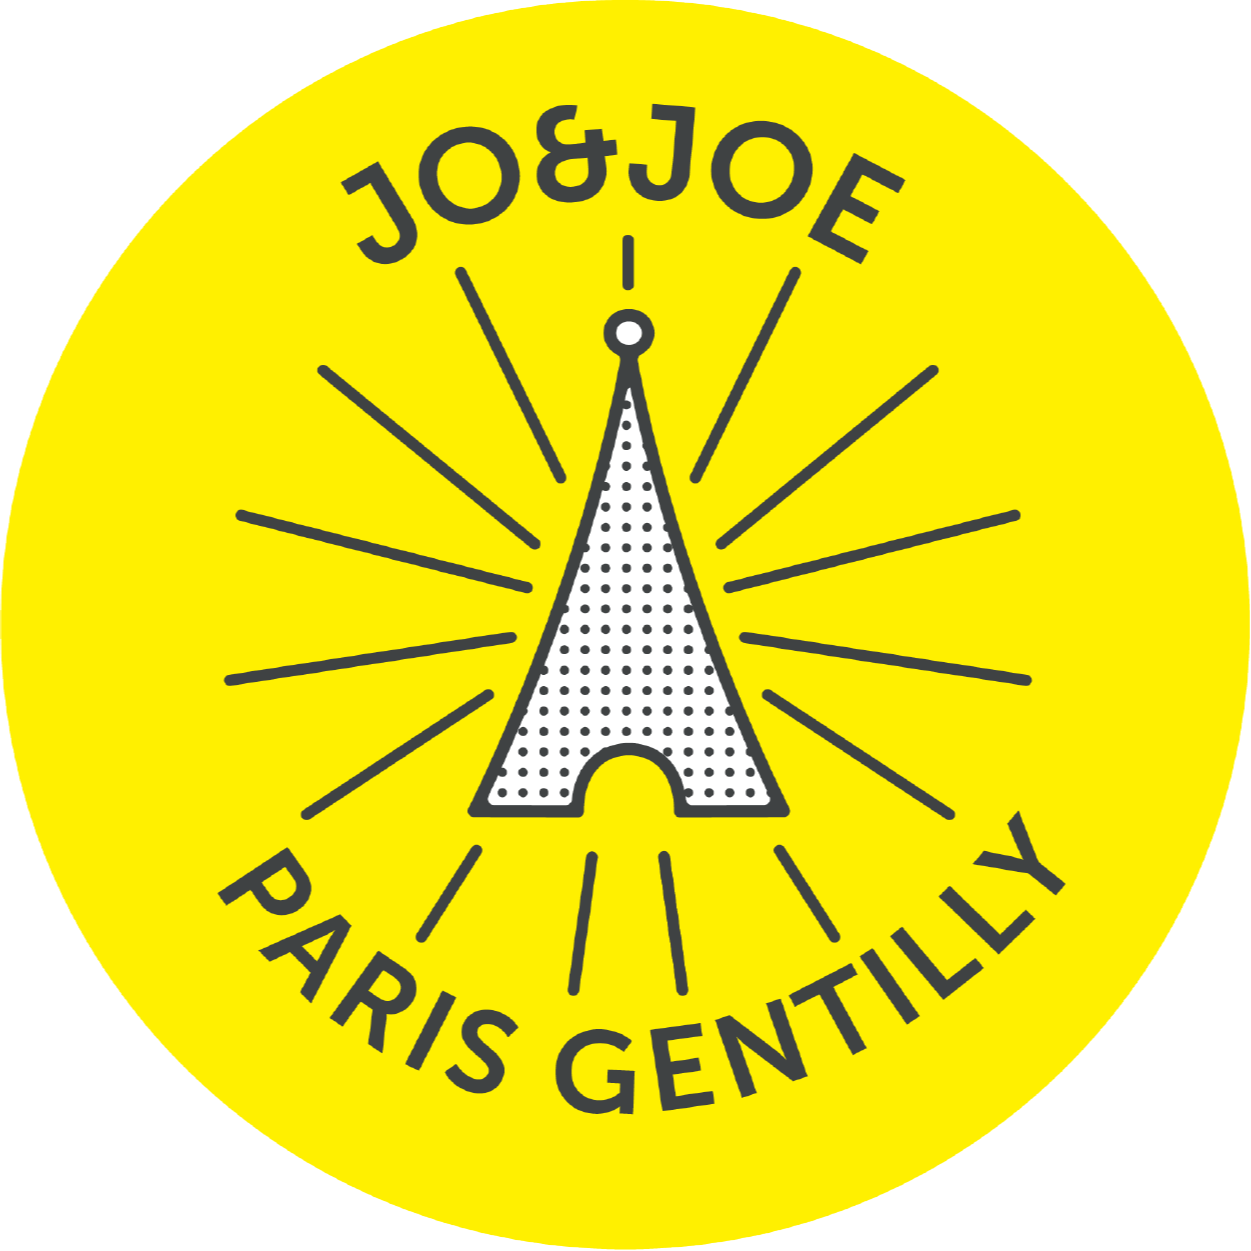 JO&JOE Gentilly Restaurant & Bar Logo